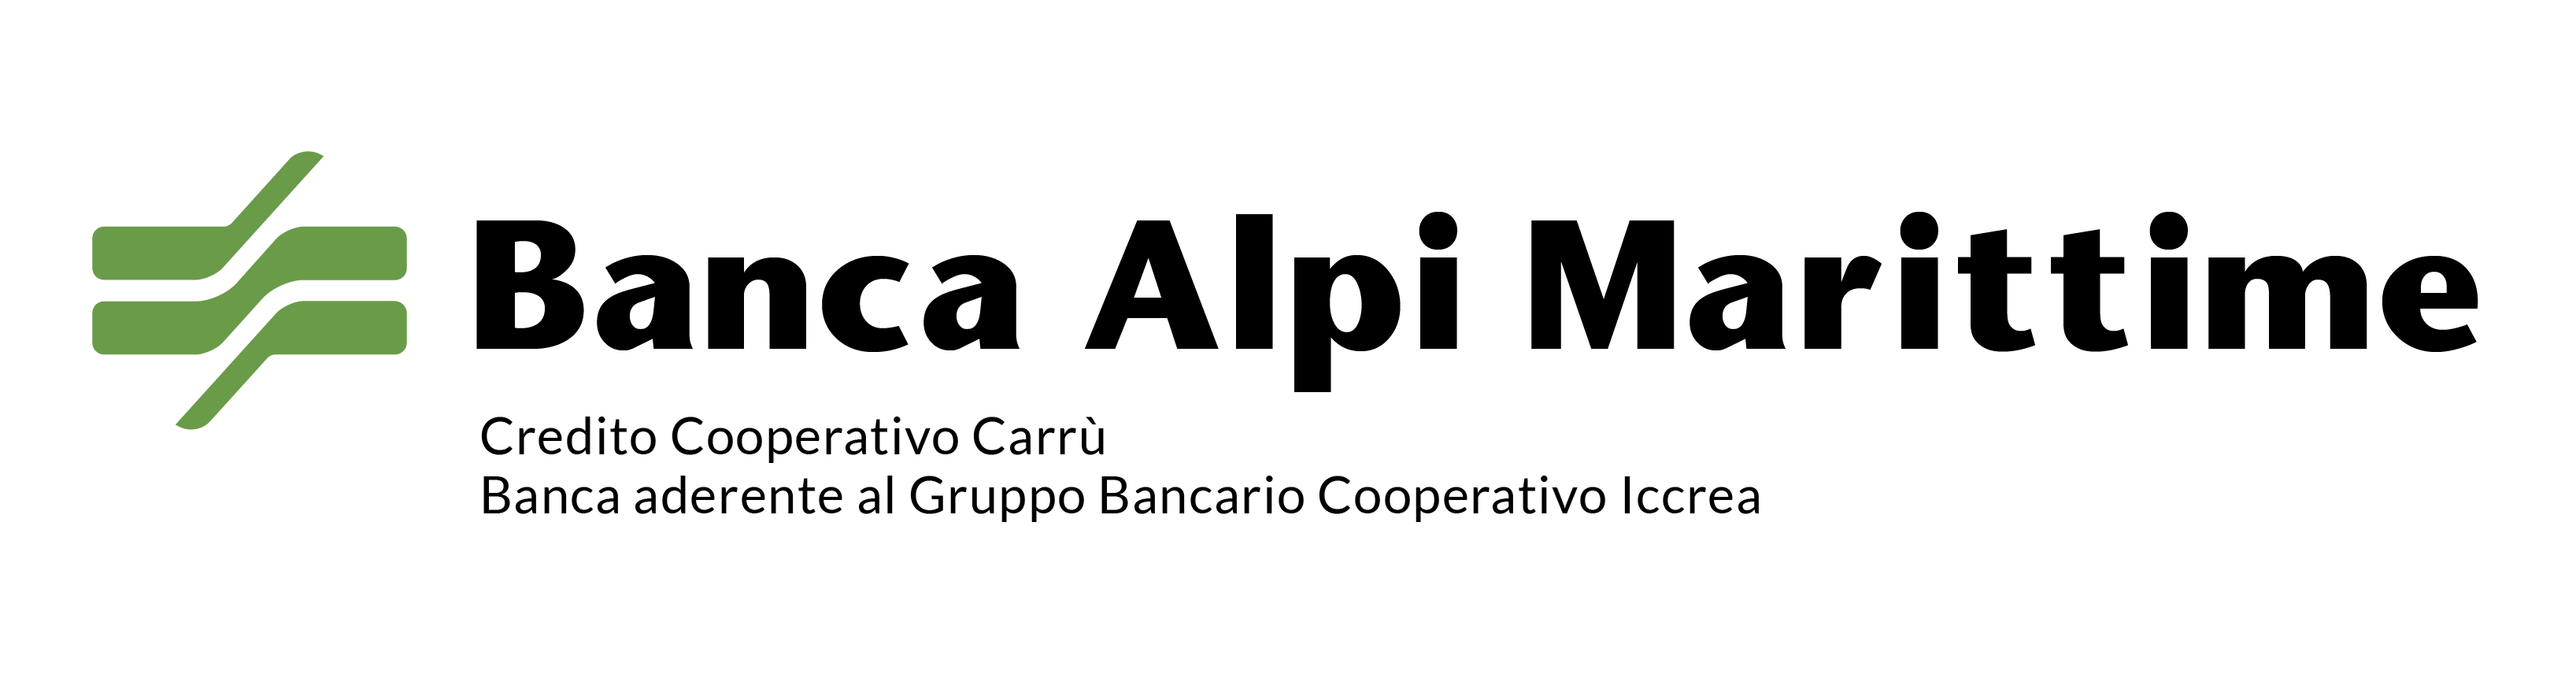 Logotipo de Banca Alpi Marittime Credito Cooperativo Carru S.c.p.A.